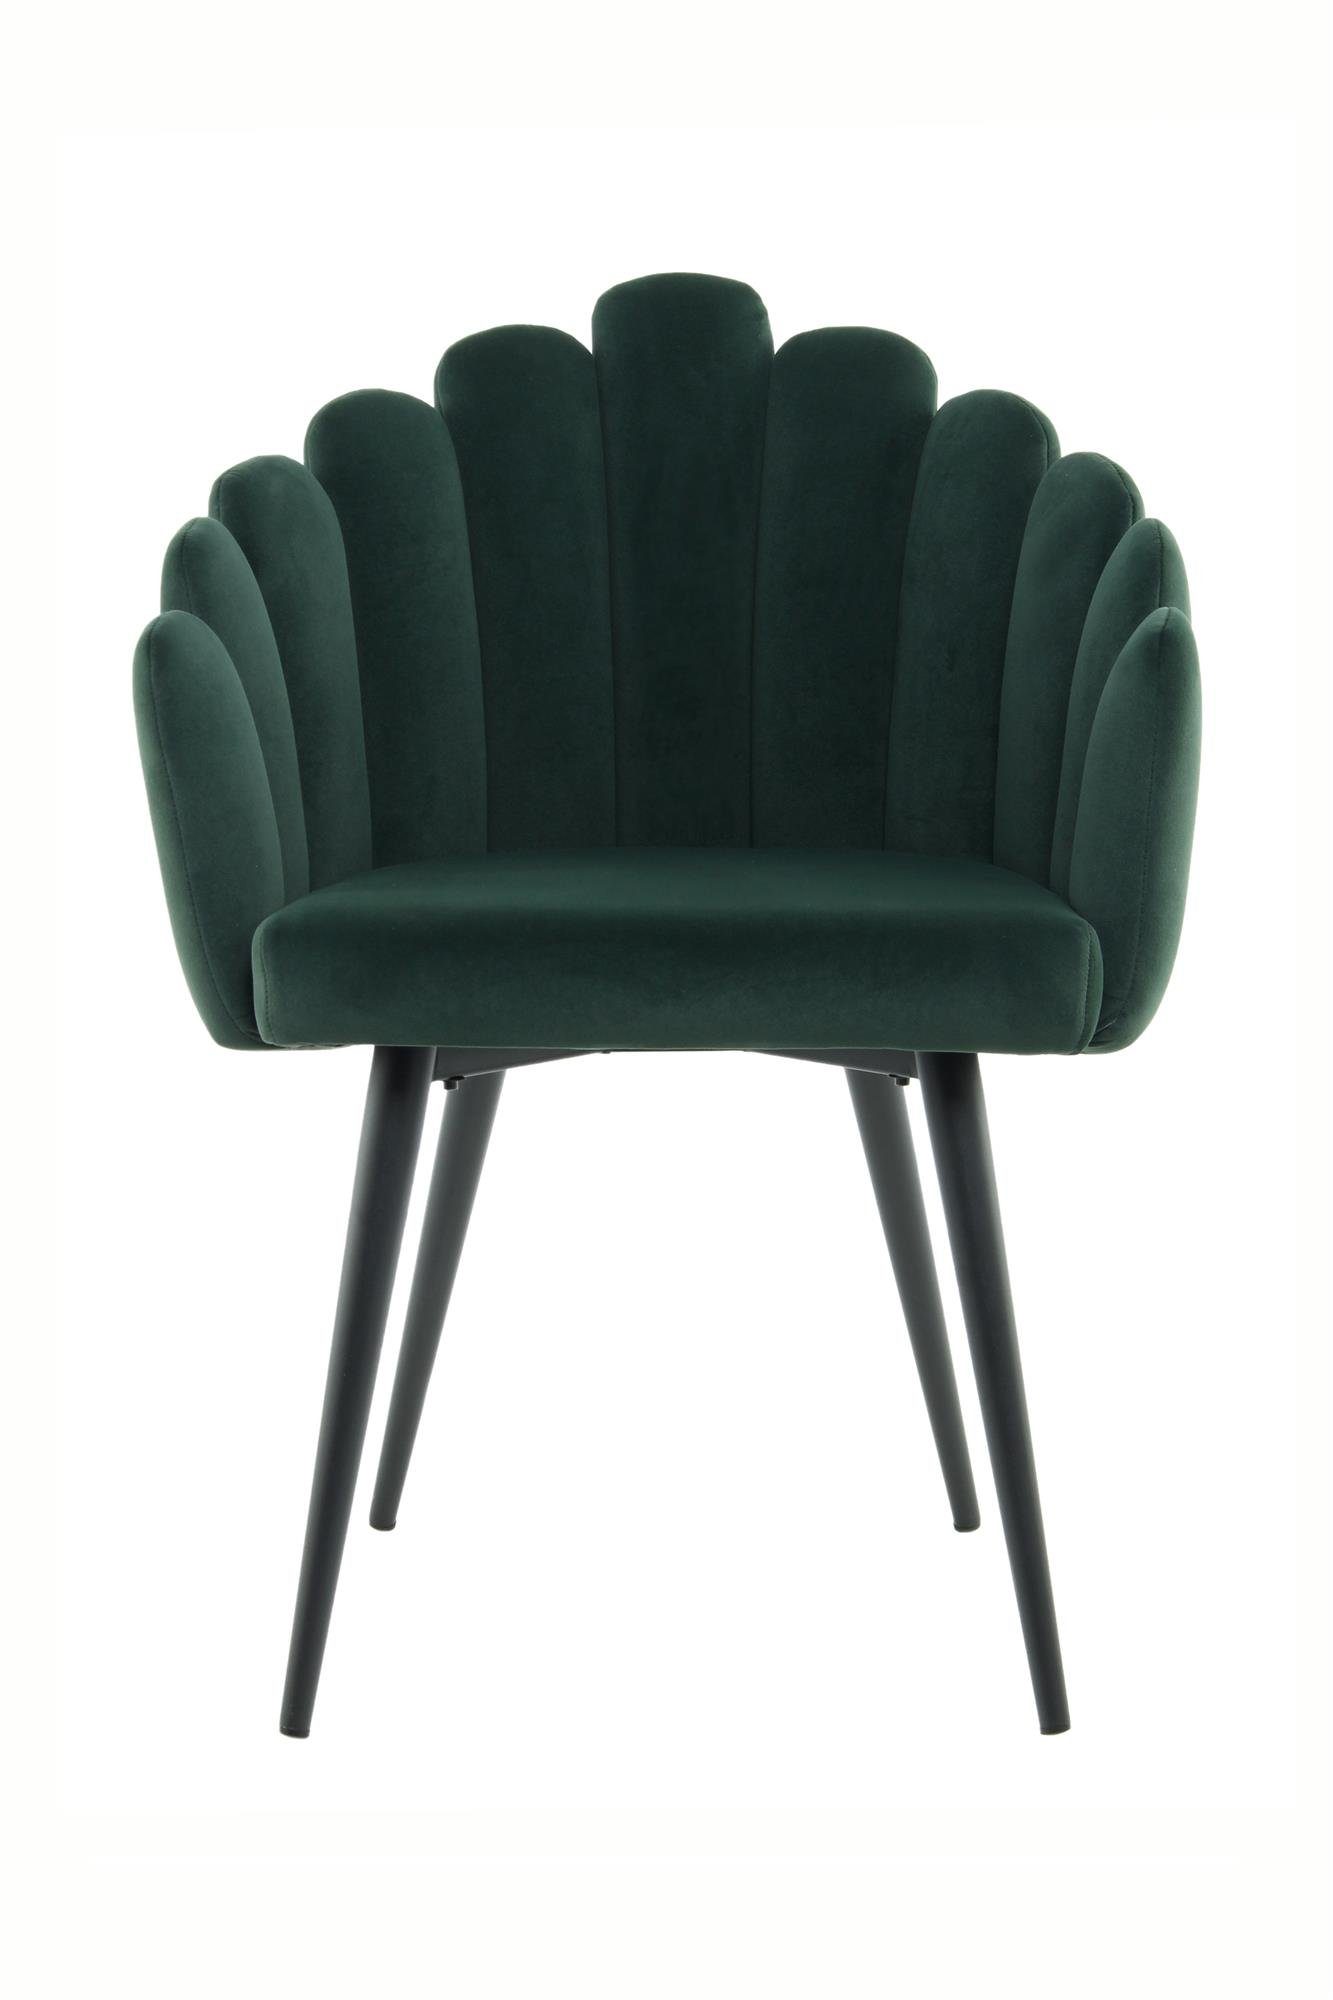 Qiyano Stuhl Sessel Samt-Stuhl mit Armlehne Muschel-Form Wohnzimmer Grün | Grün